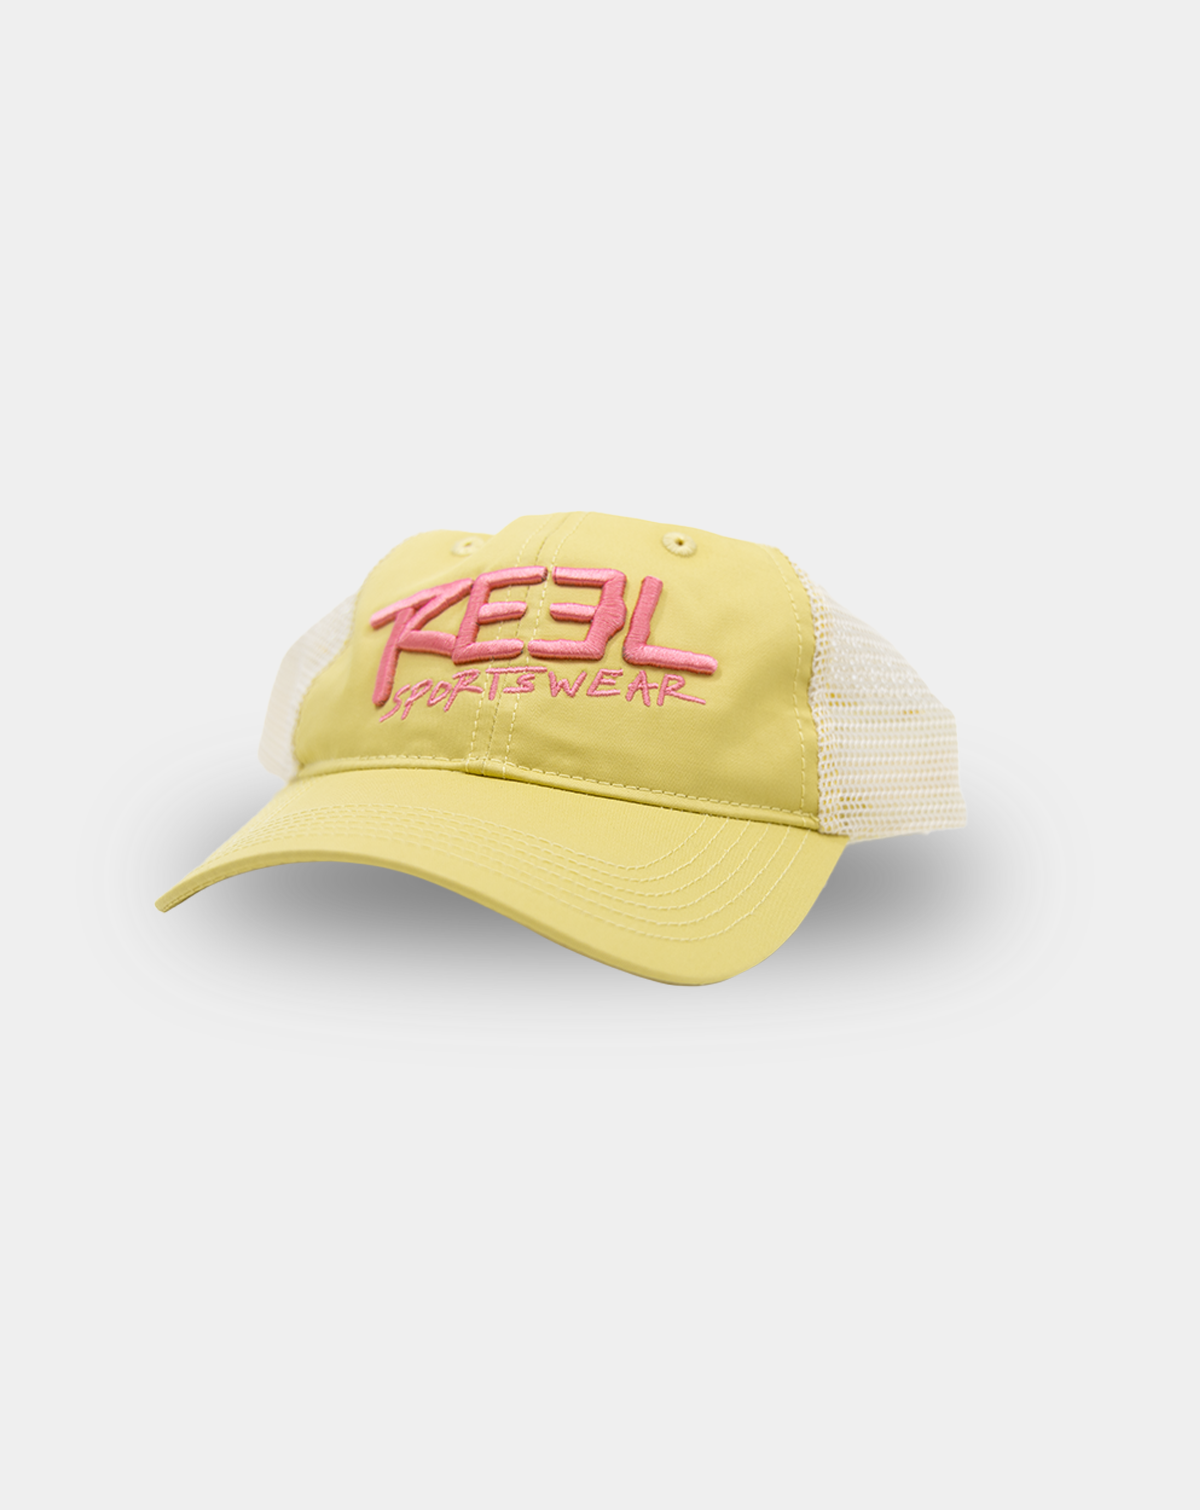 Outcast Trucker fishing hat - Unstructured low profile - Reel Sportswear